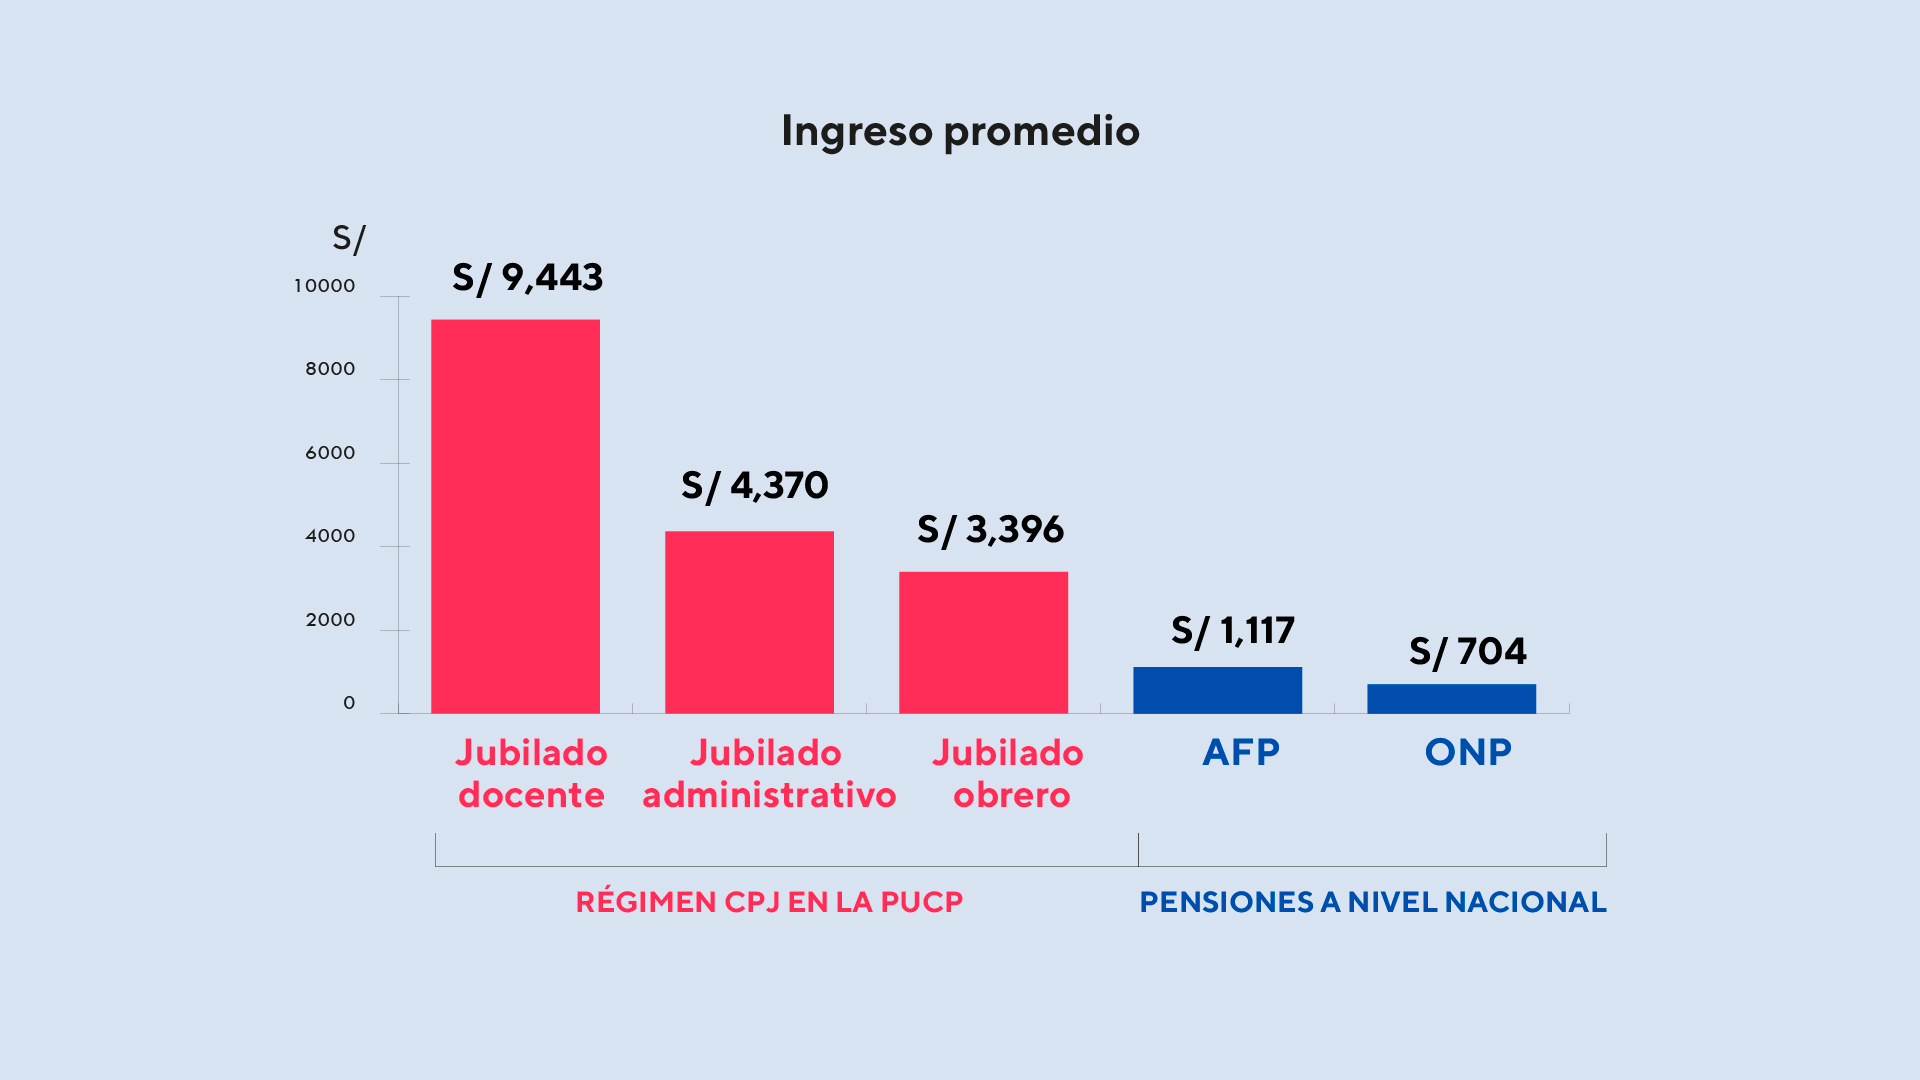 Gráfico de barras que compara los ingresos promedio de los CPJ de la PUCP (jubilado docente recibe un total de S/ 9,454 mensuales; un jubilado administrativo, S/ 4,446; y un jubilado obrero, S/3,258) con la AFP (S/ 1,117) y ONP (S/ 804).